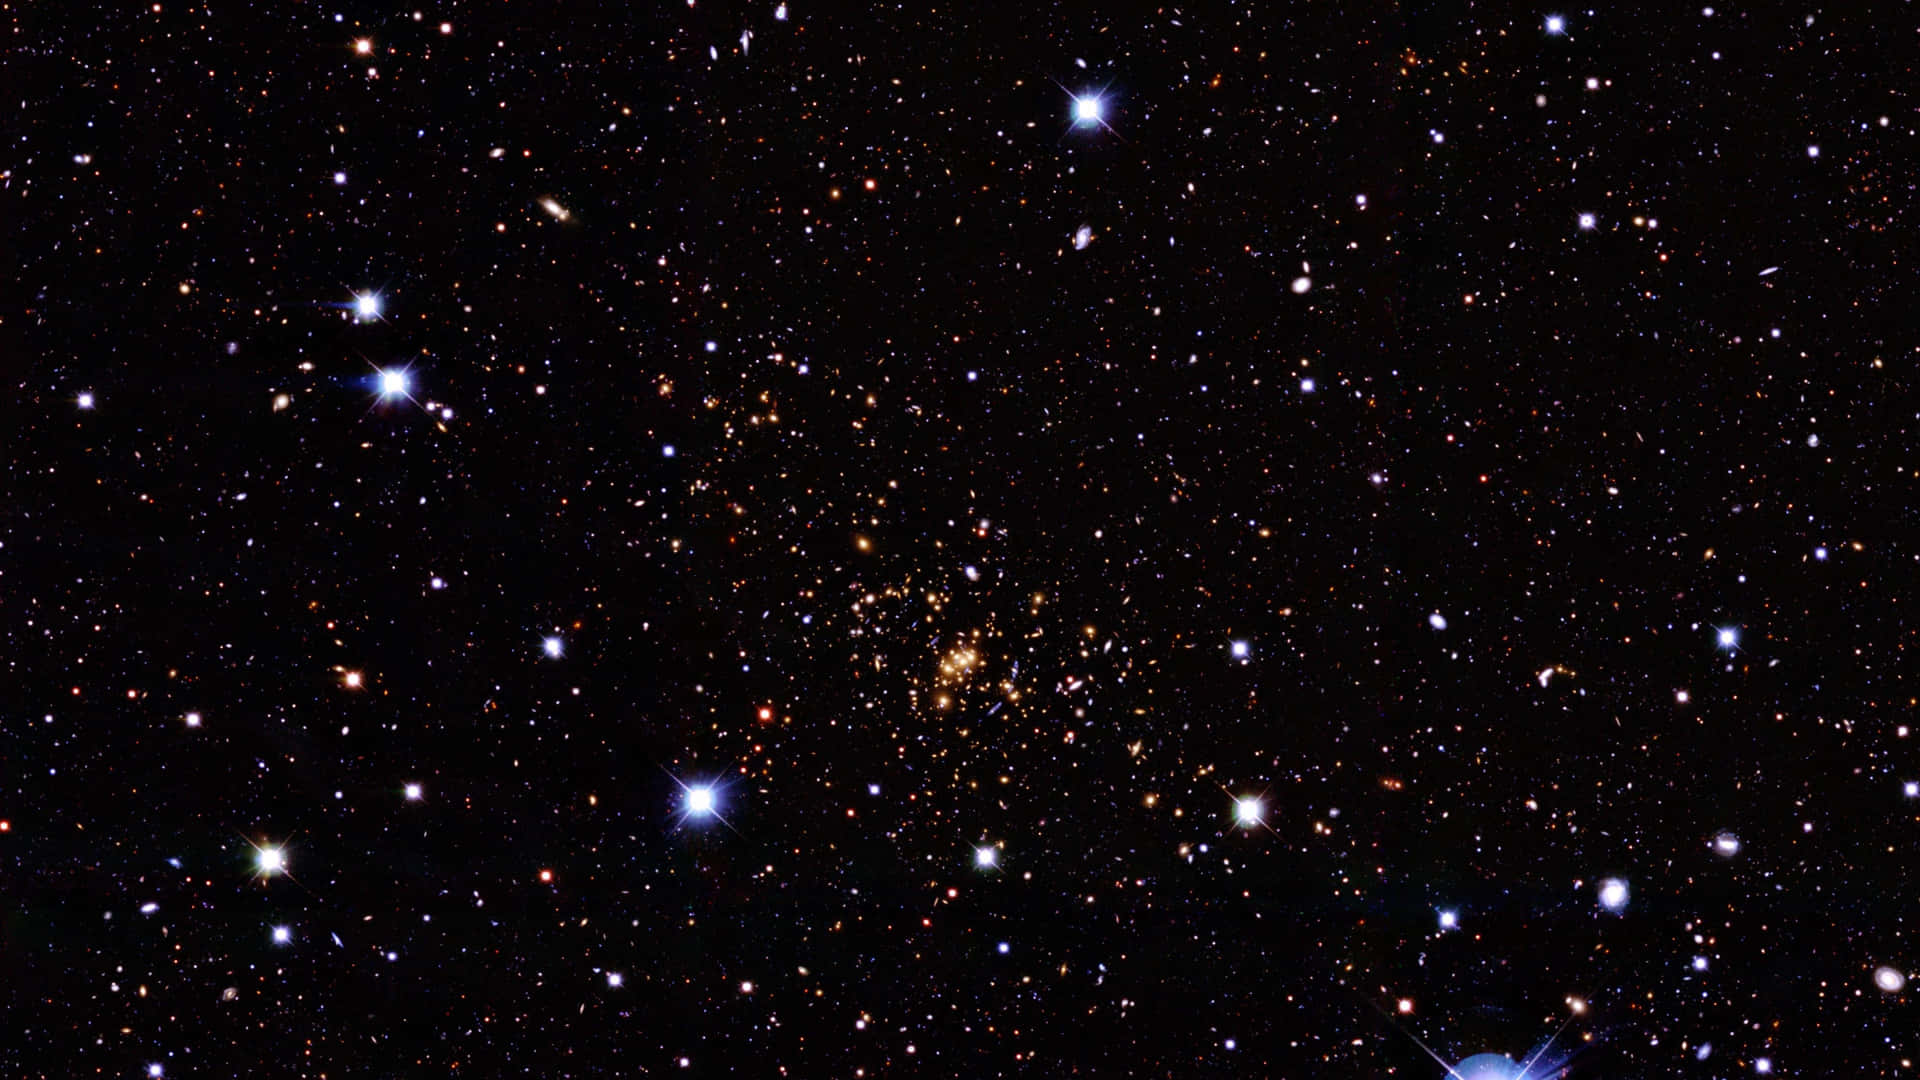 Baggrund af rumstjerner fanget af Hubble-teleskopet